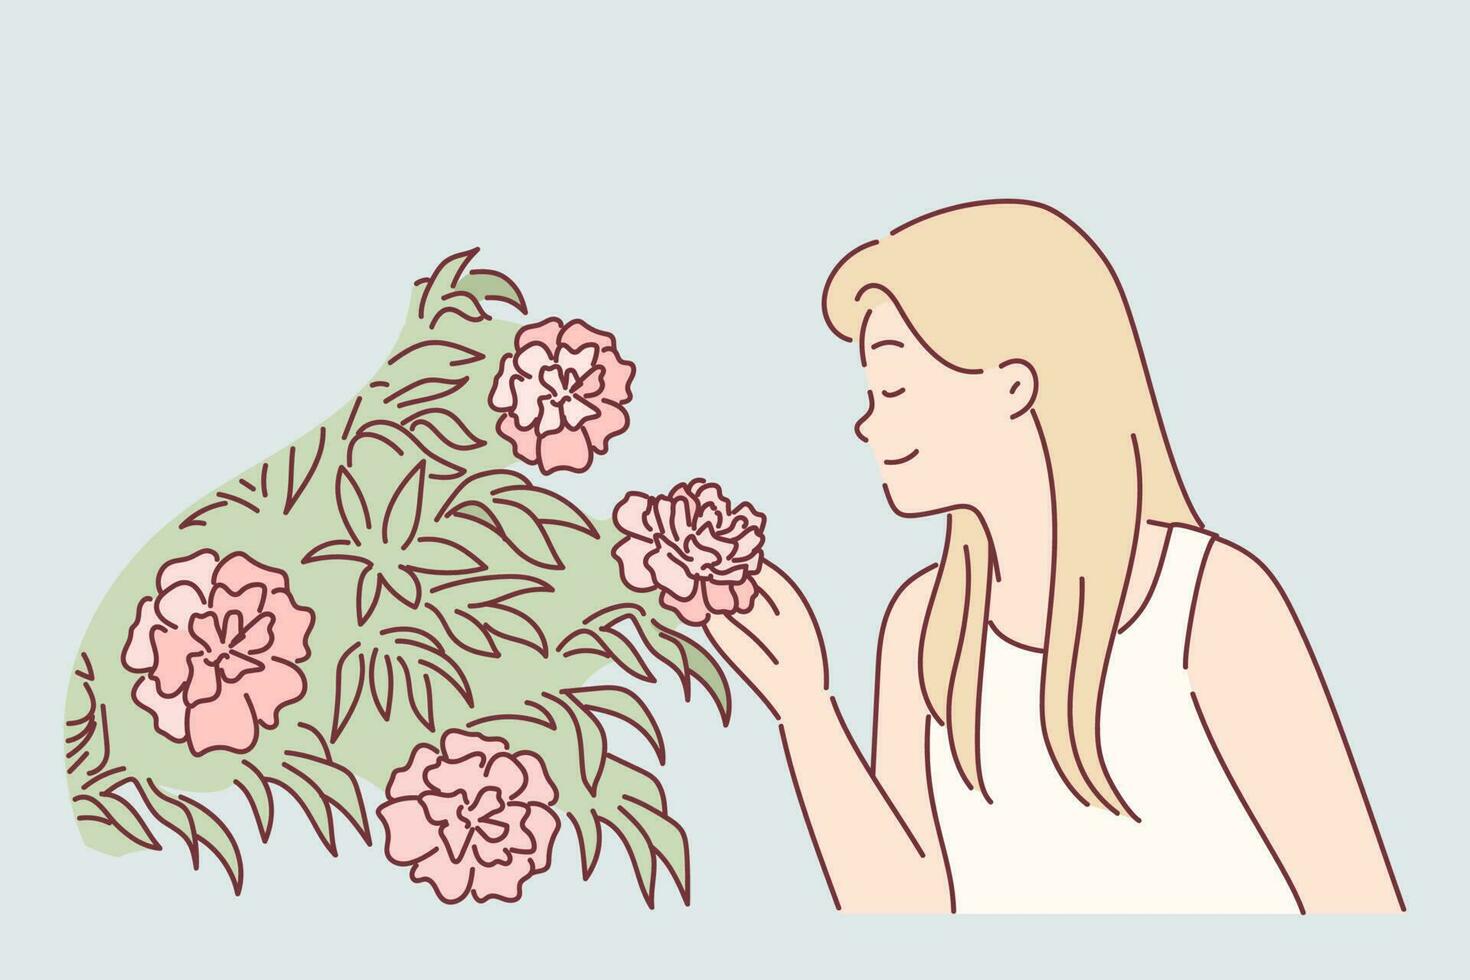 femme jouit parfum de Rose fleurs par inhaler parfum tandis que en marchant dans parc ou serre. blond fille, fermeture yeux, renifle bourgeons de fleurs croissance sur des buissons et épanouissement dans printemps saison vecteur